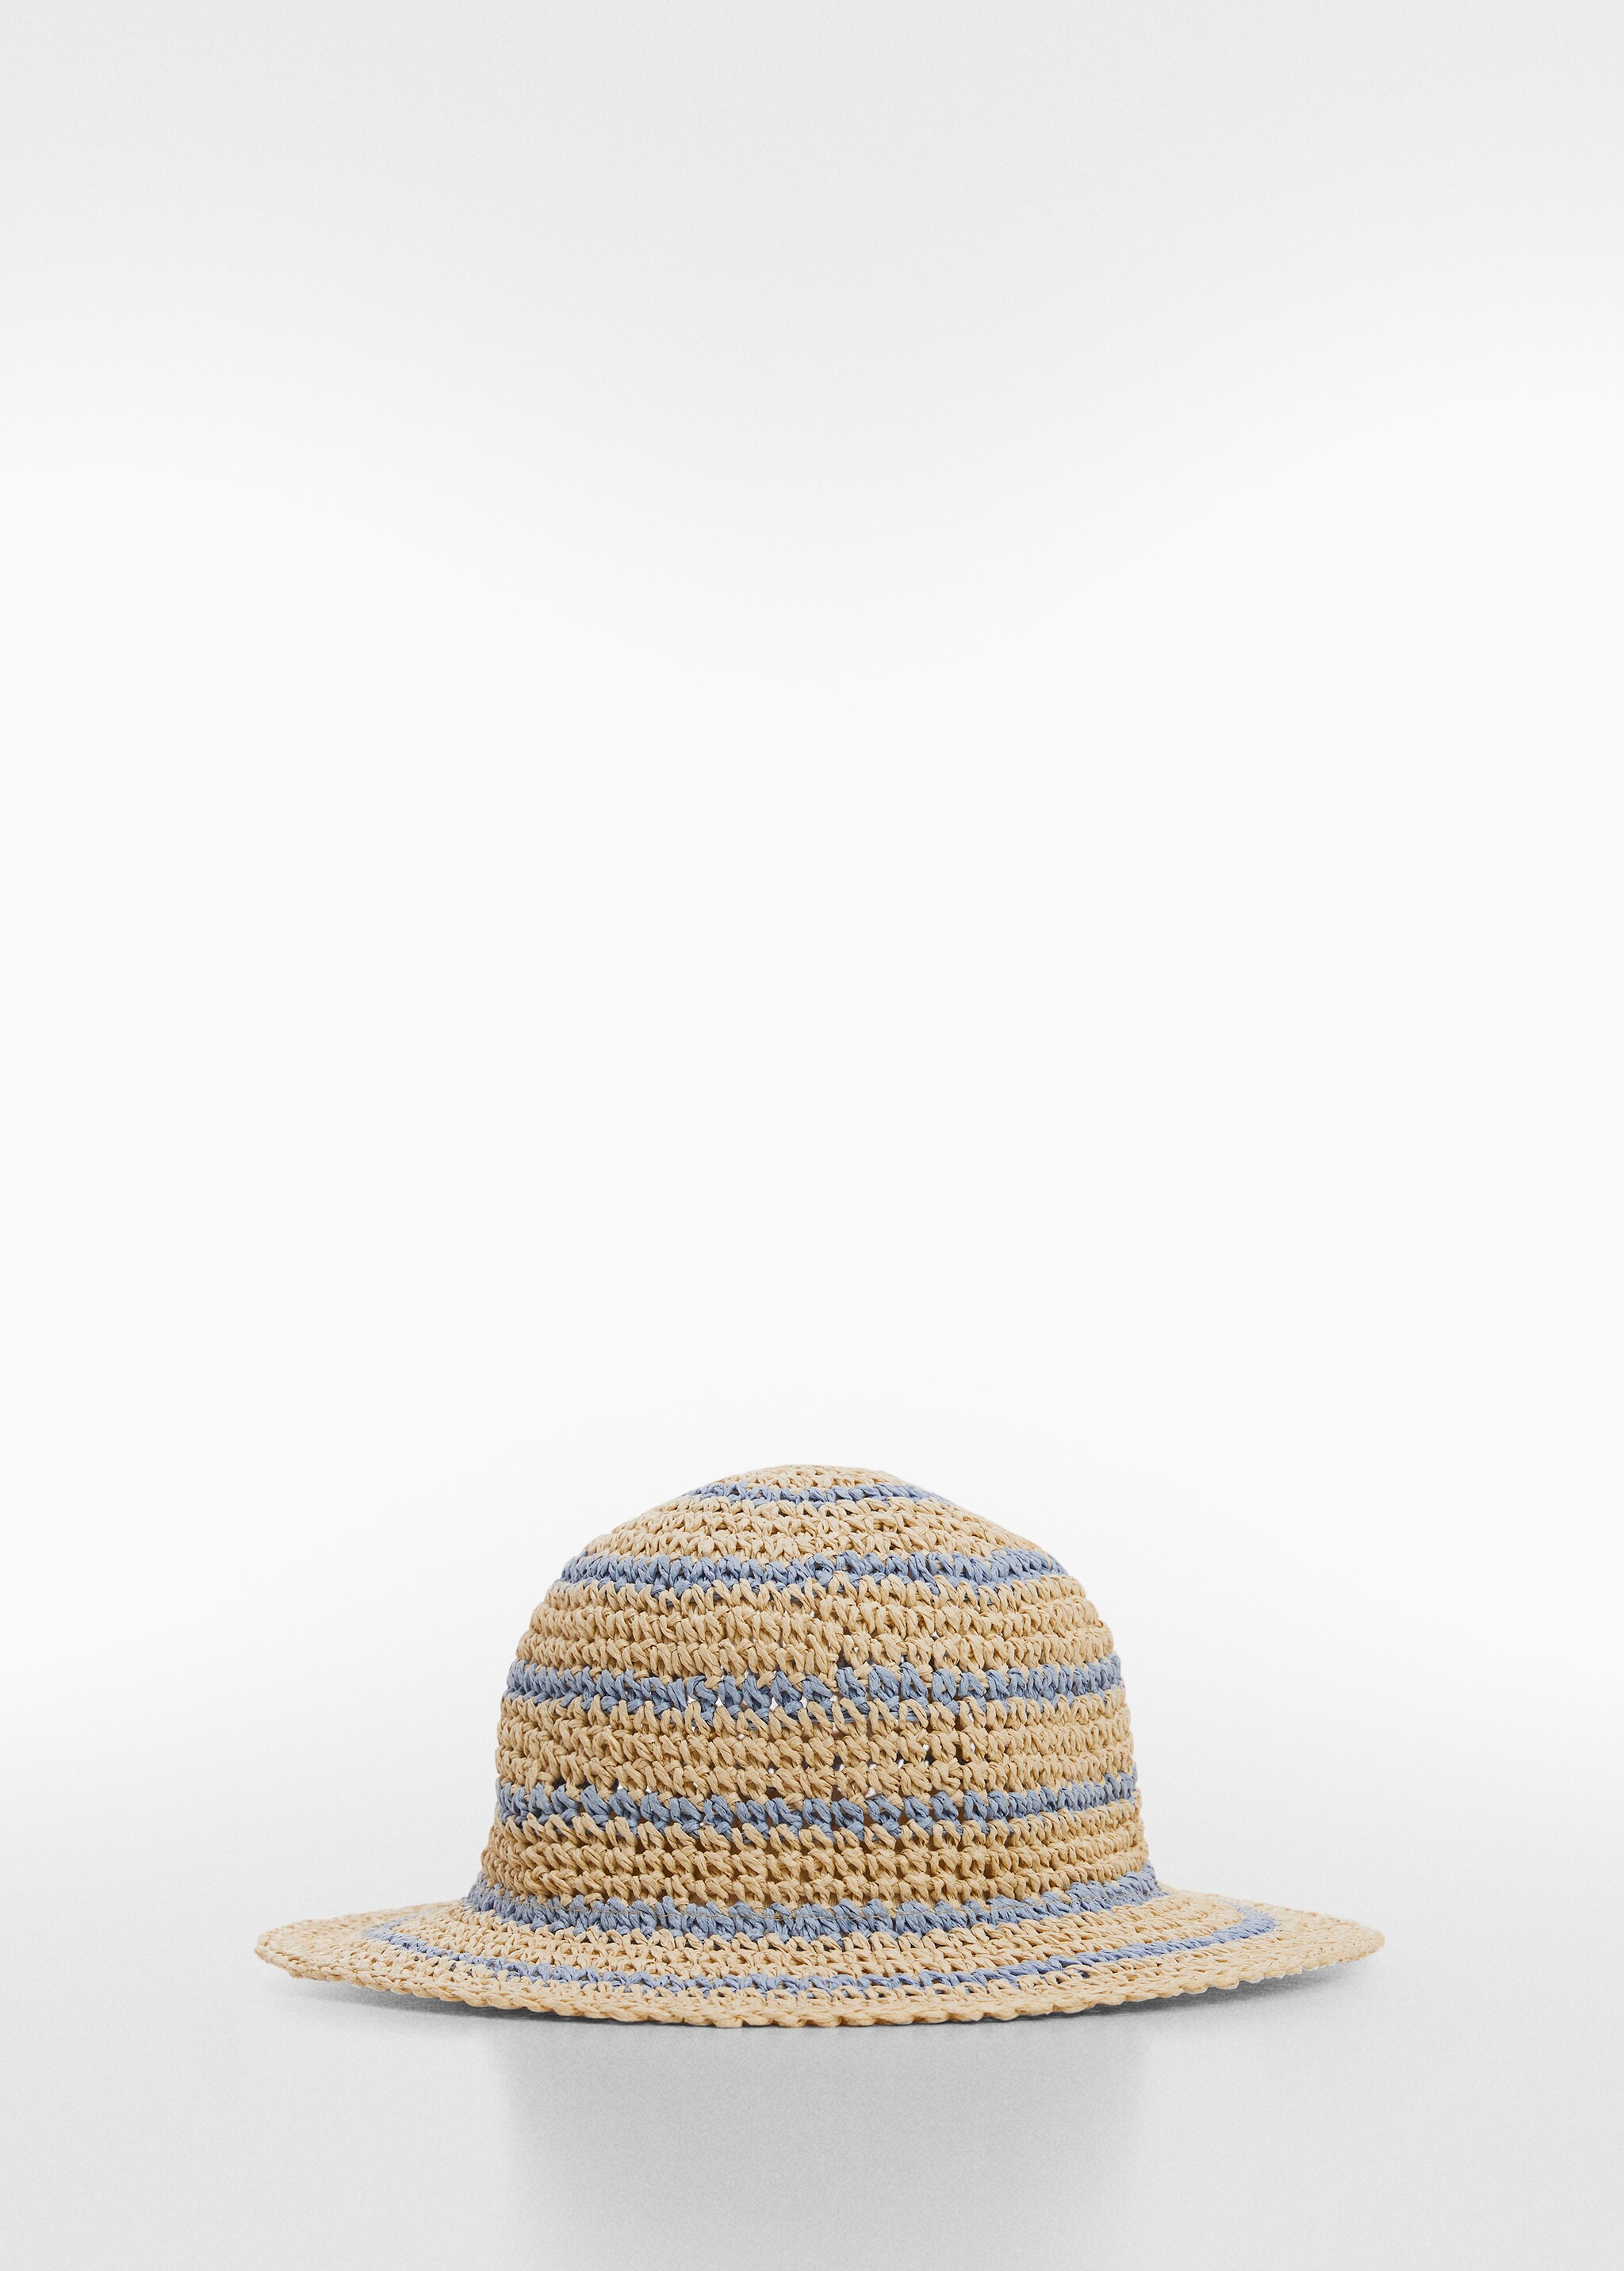 Sombrero paja bicolor - Artículo sin modelo